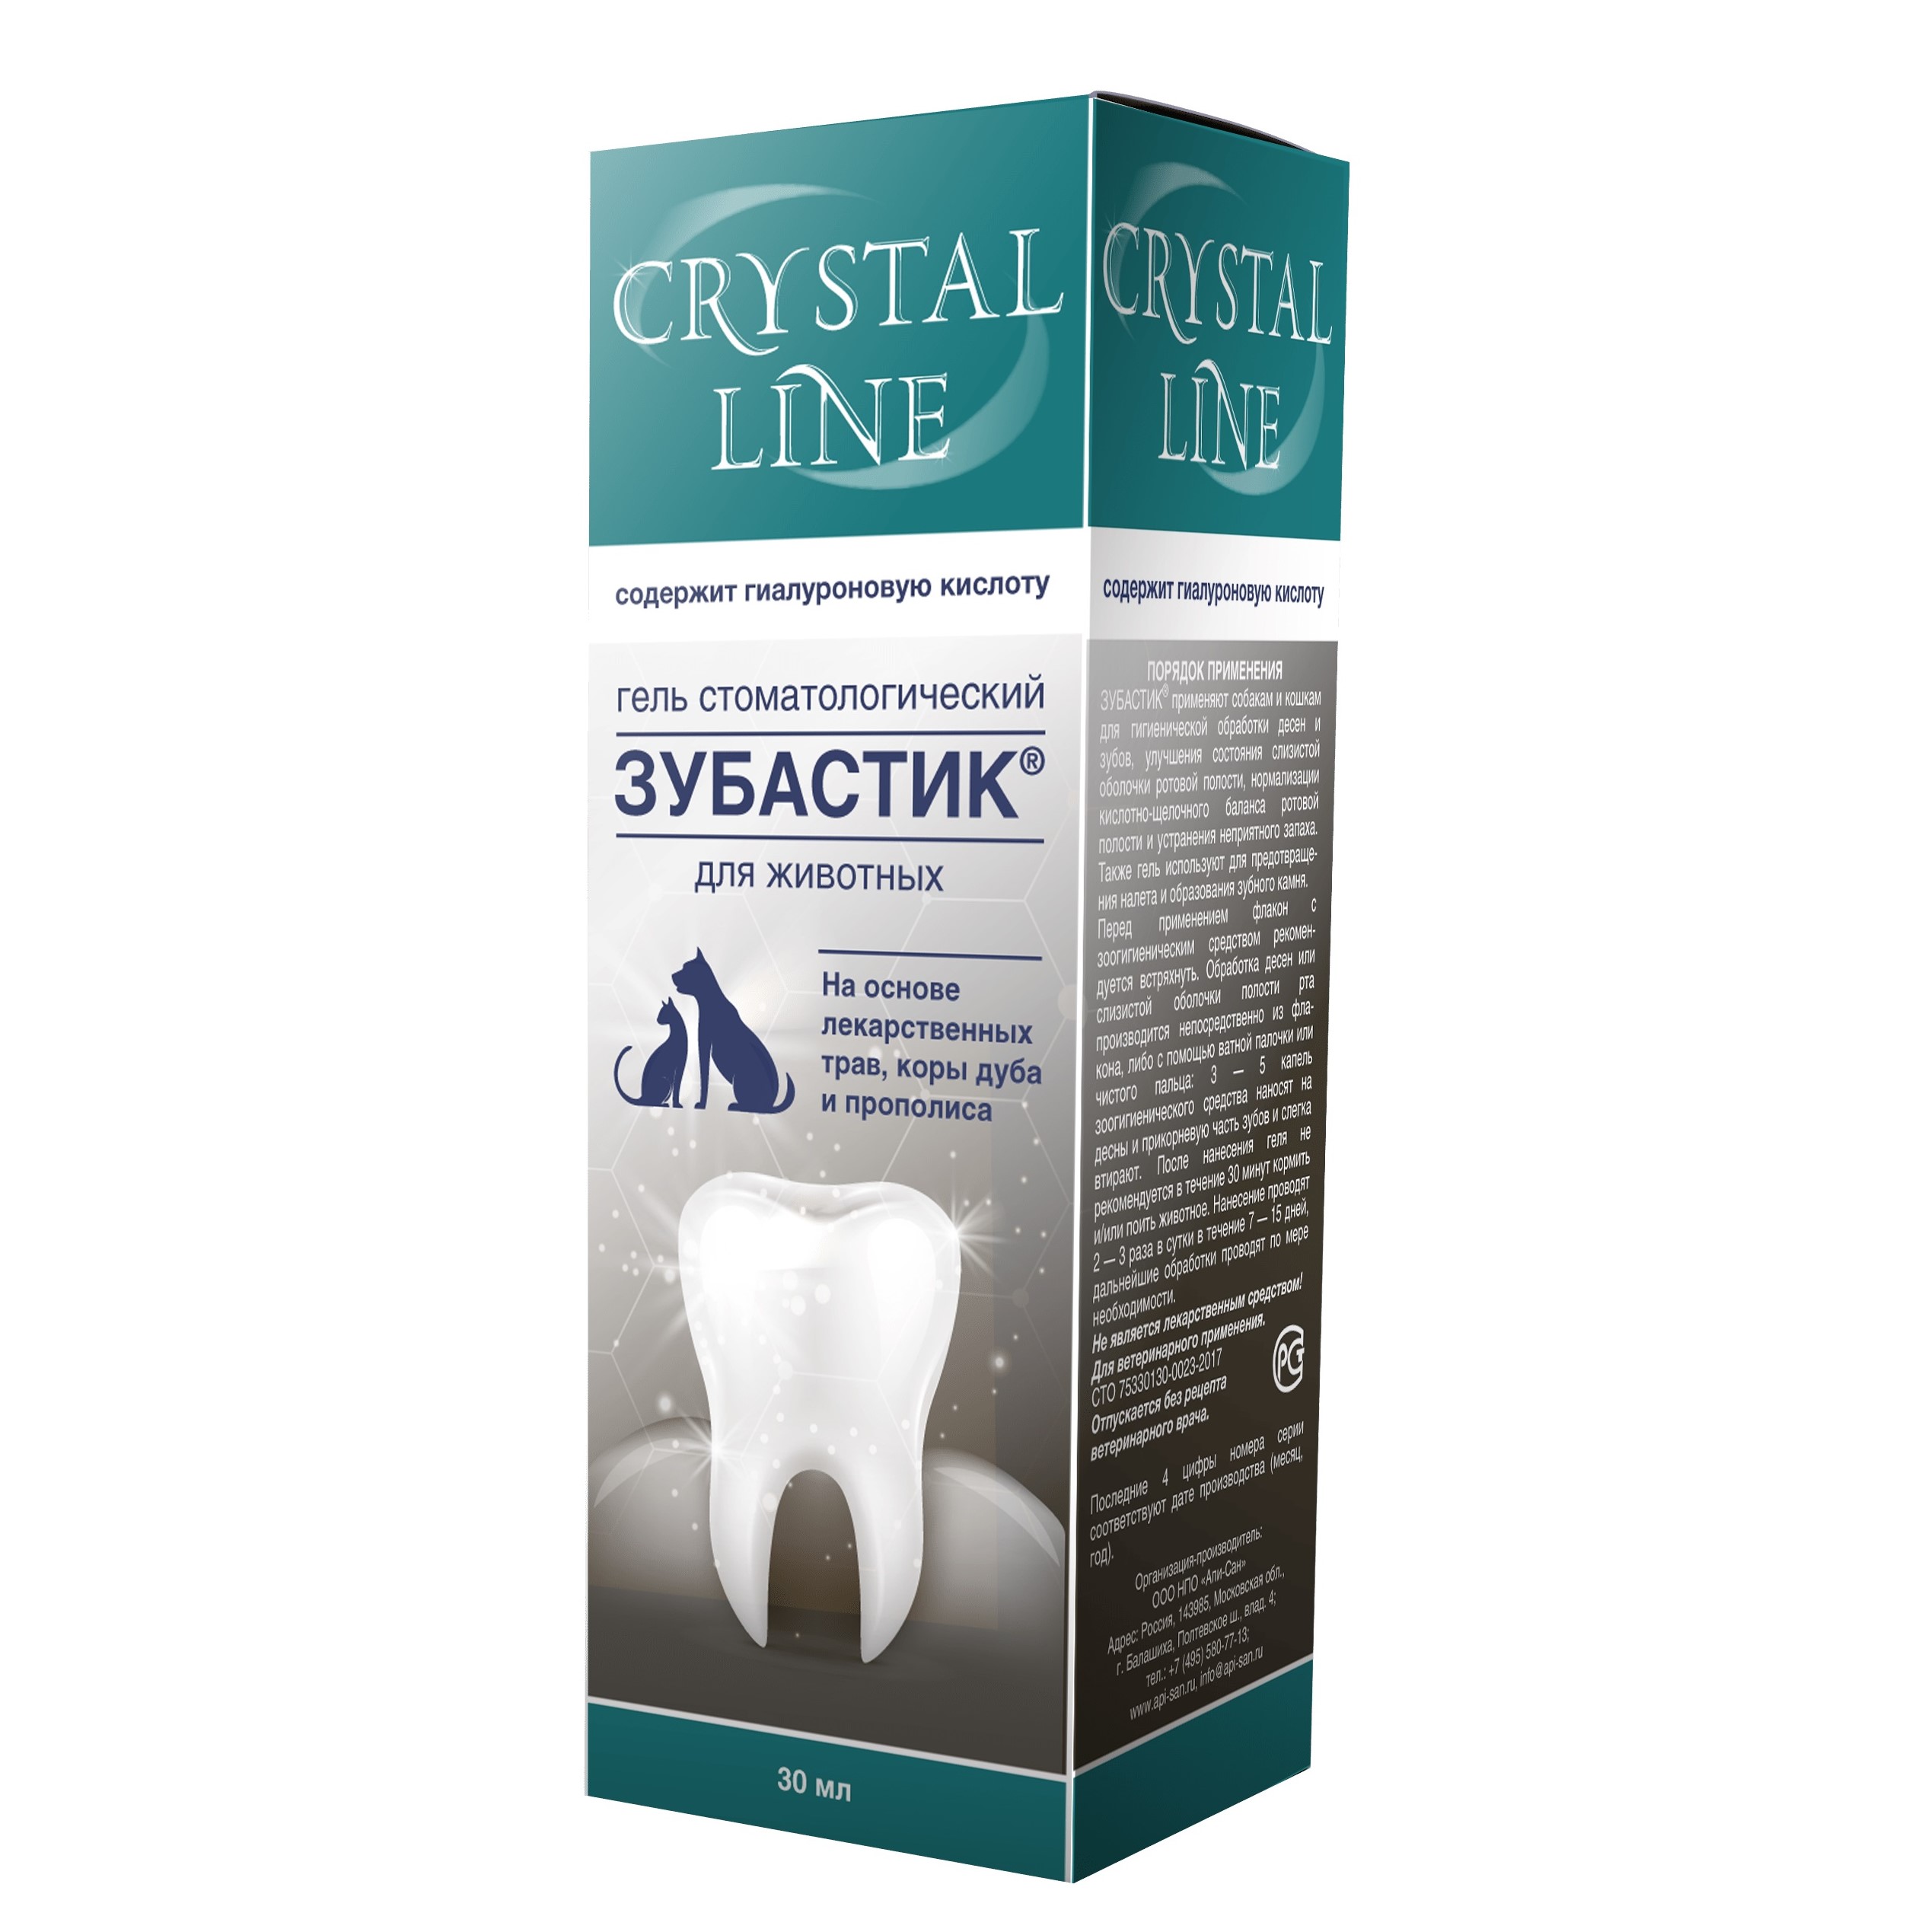 Apicenna CRYSTAL LINE Зубастик Гель стоматологический для животных, 30 мл 